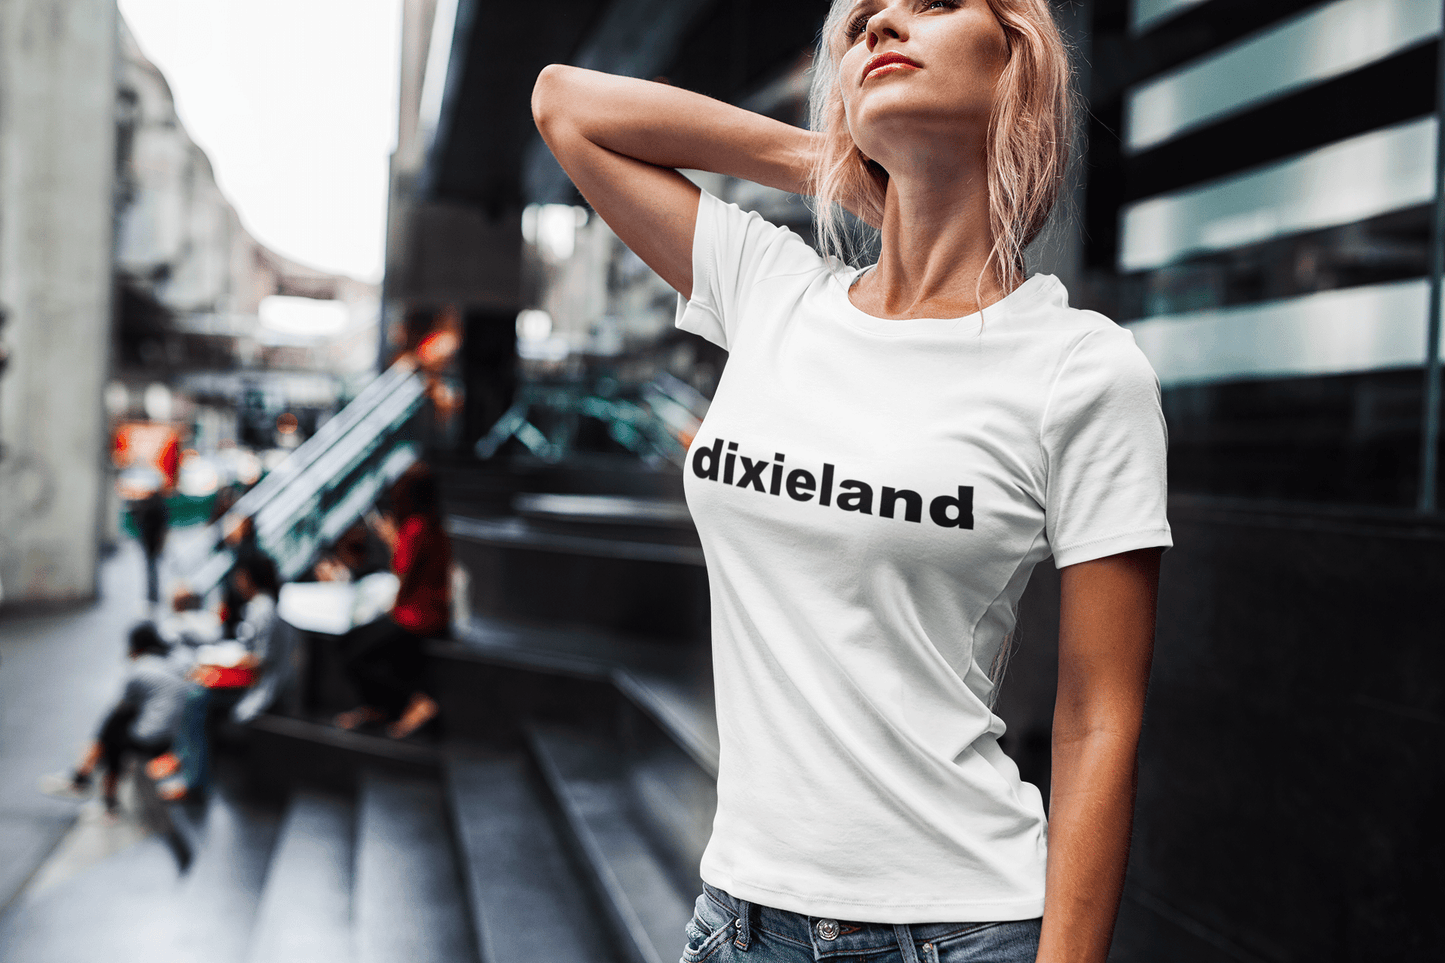 Dixieland Tourist Attraction T-shirt à manches courtes et col rond pour femme 00072